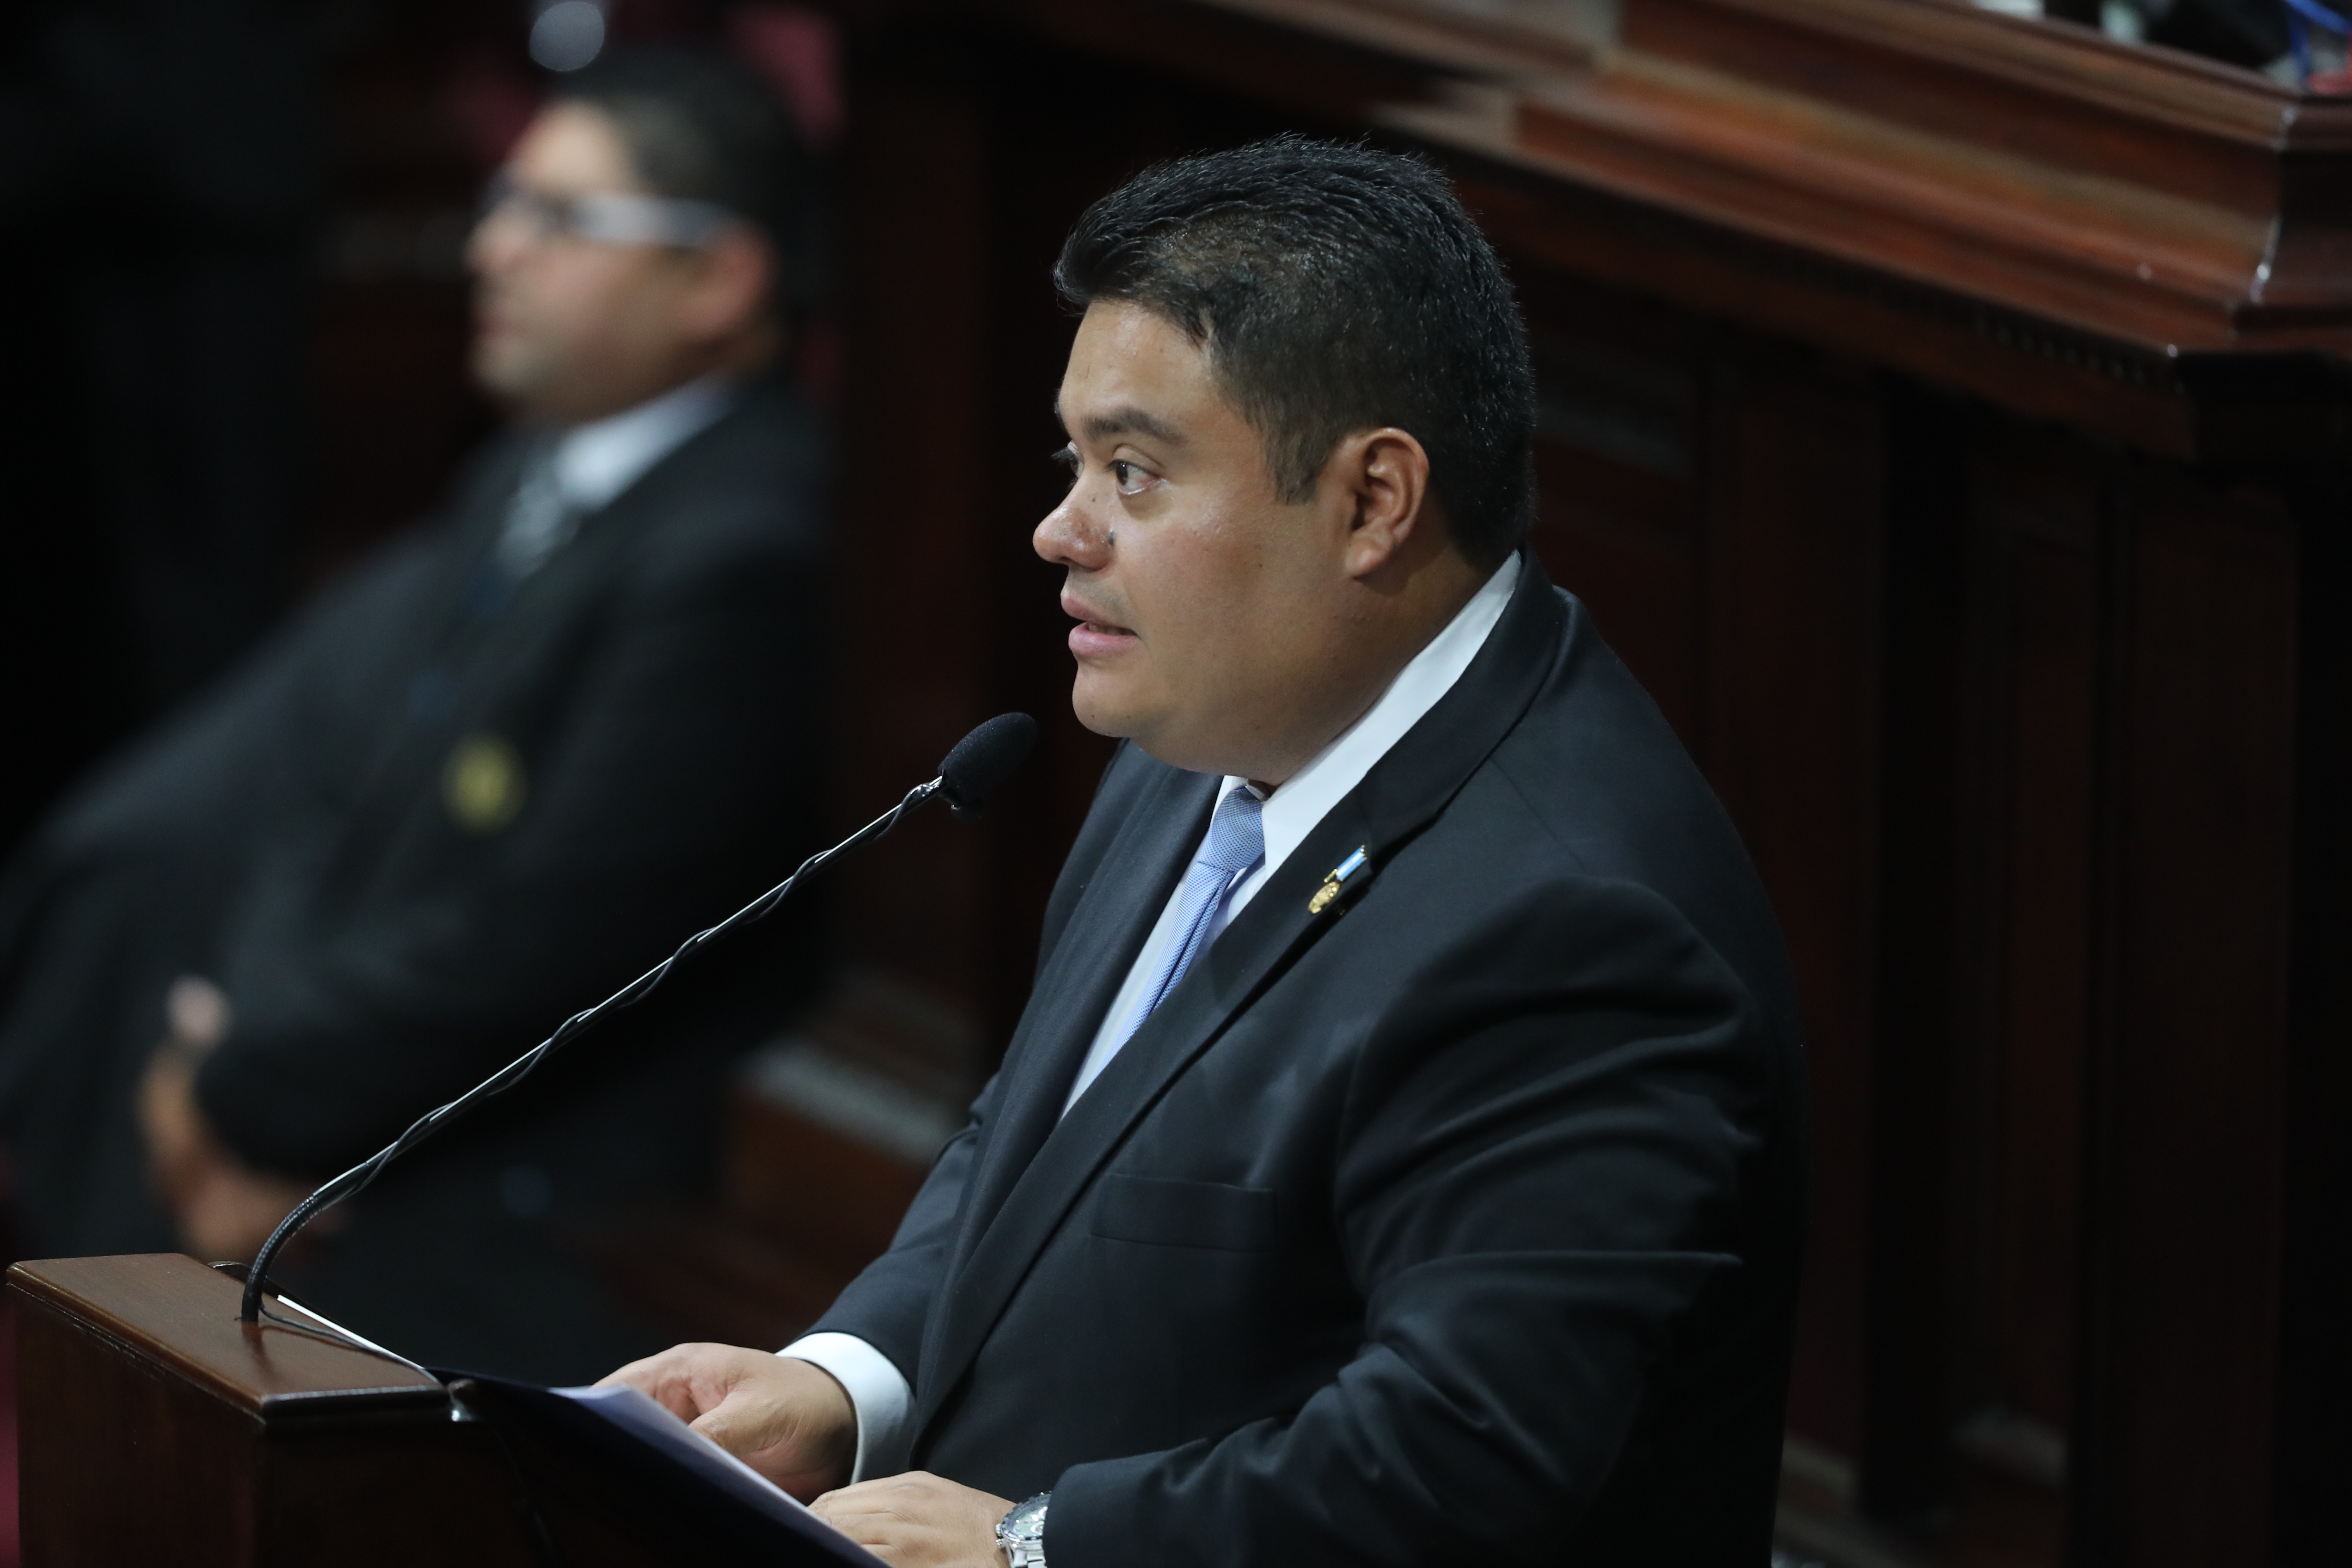 El diputado Allan Estuardo Rodríguez Reyes asume como presidente del Congreso de la República para el período 2020-2021. (Foto Prensa Libre: Érick Ávila)